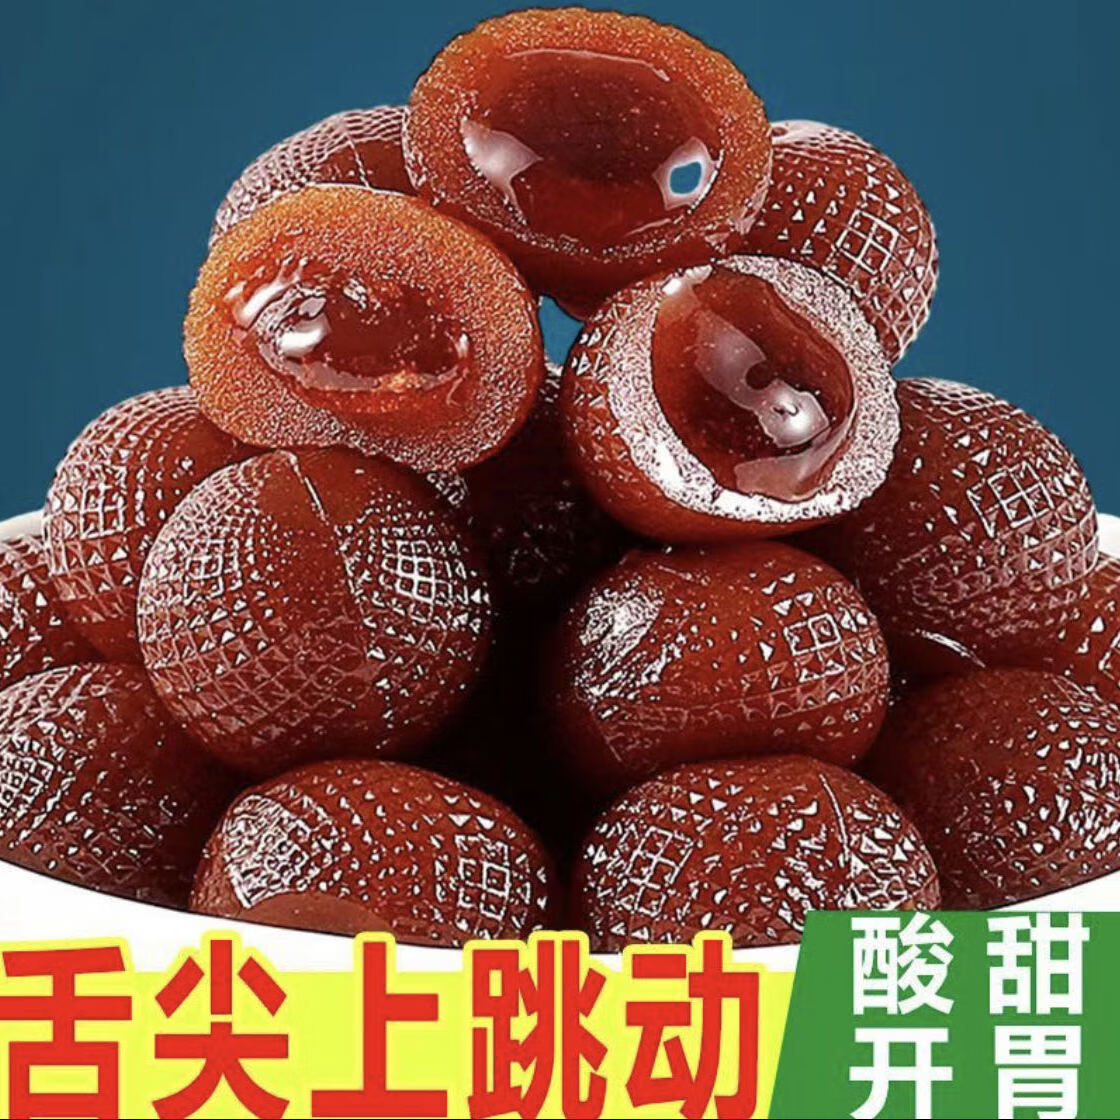 Derenruyu爆浆山楂球草莓秋梨夹心山楂蜜饯果脯果糕美味小零食 *爆浆山楂*草莓味* (40包